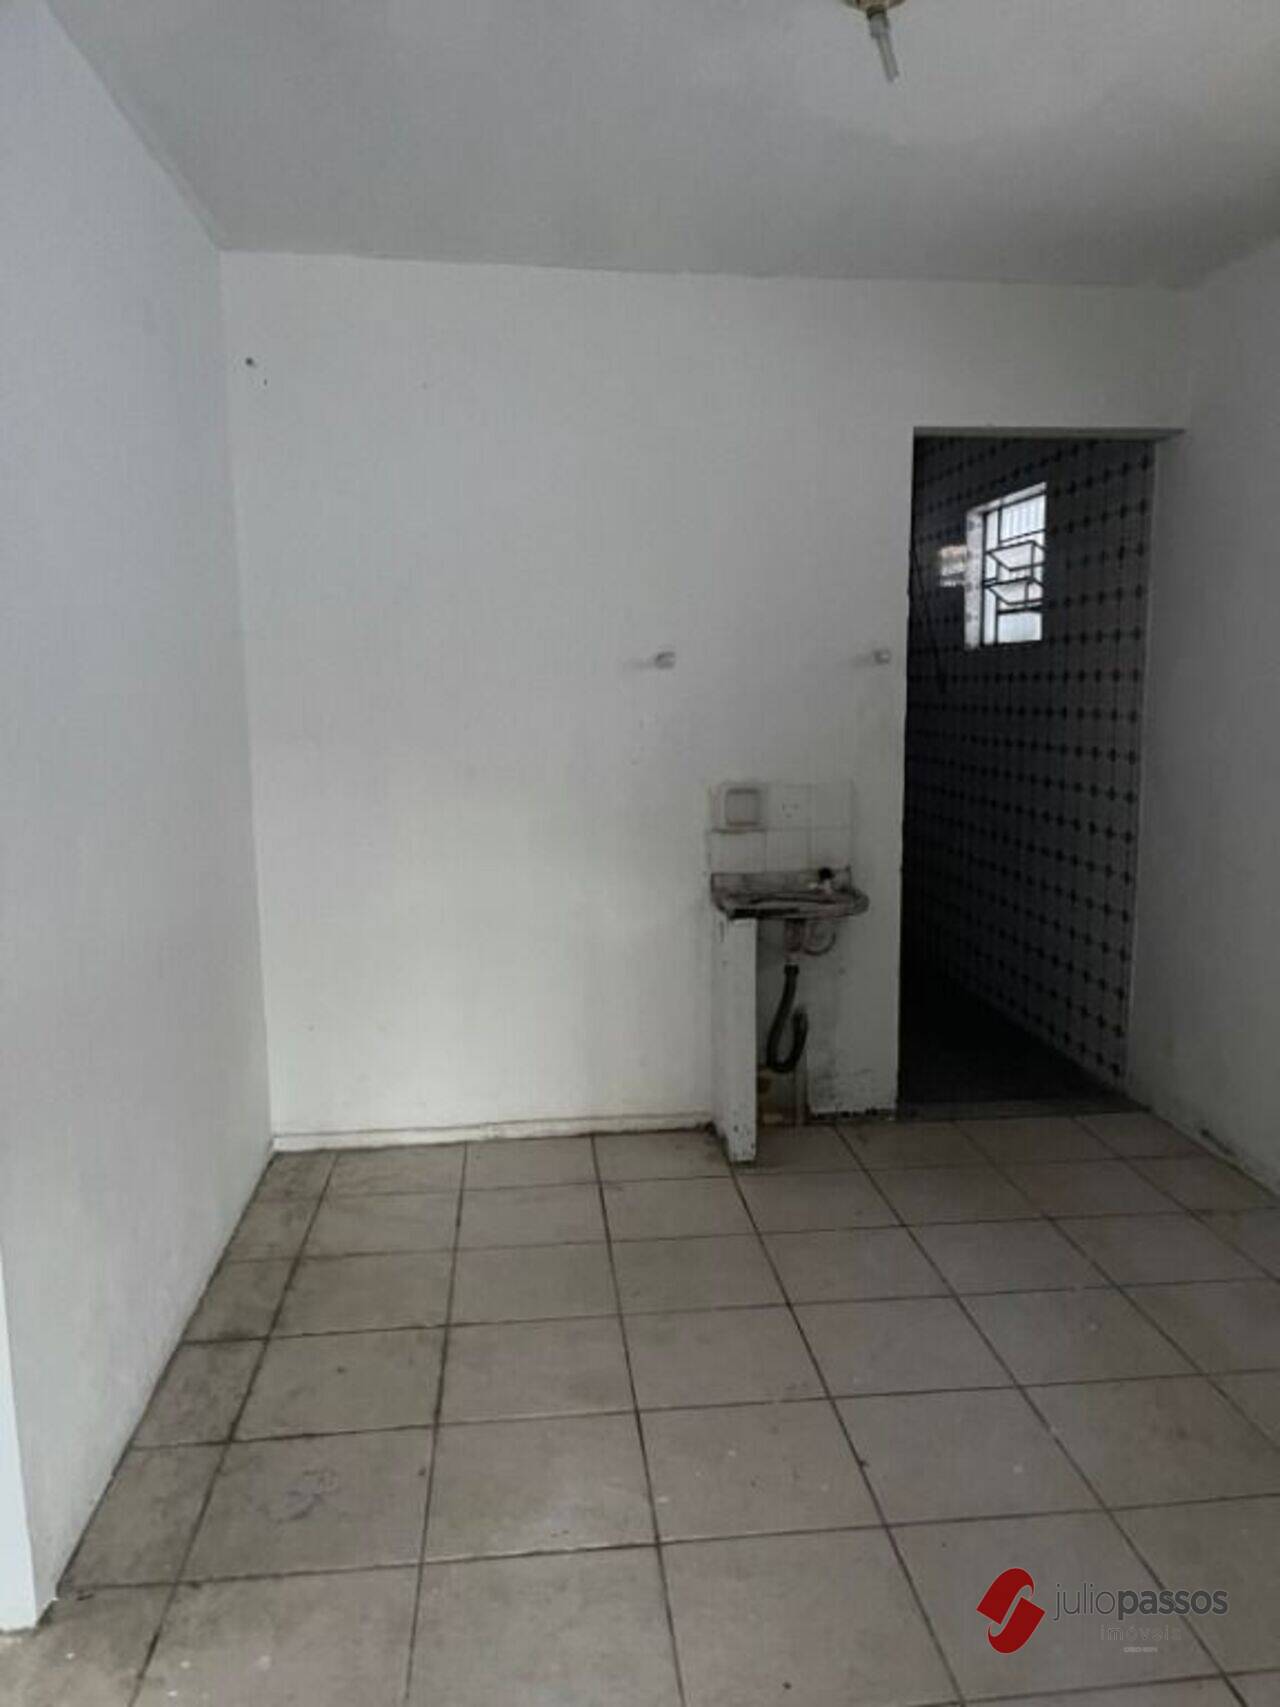 Casa Suíssa, Aracaju - SE